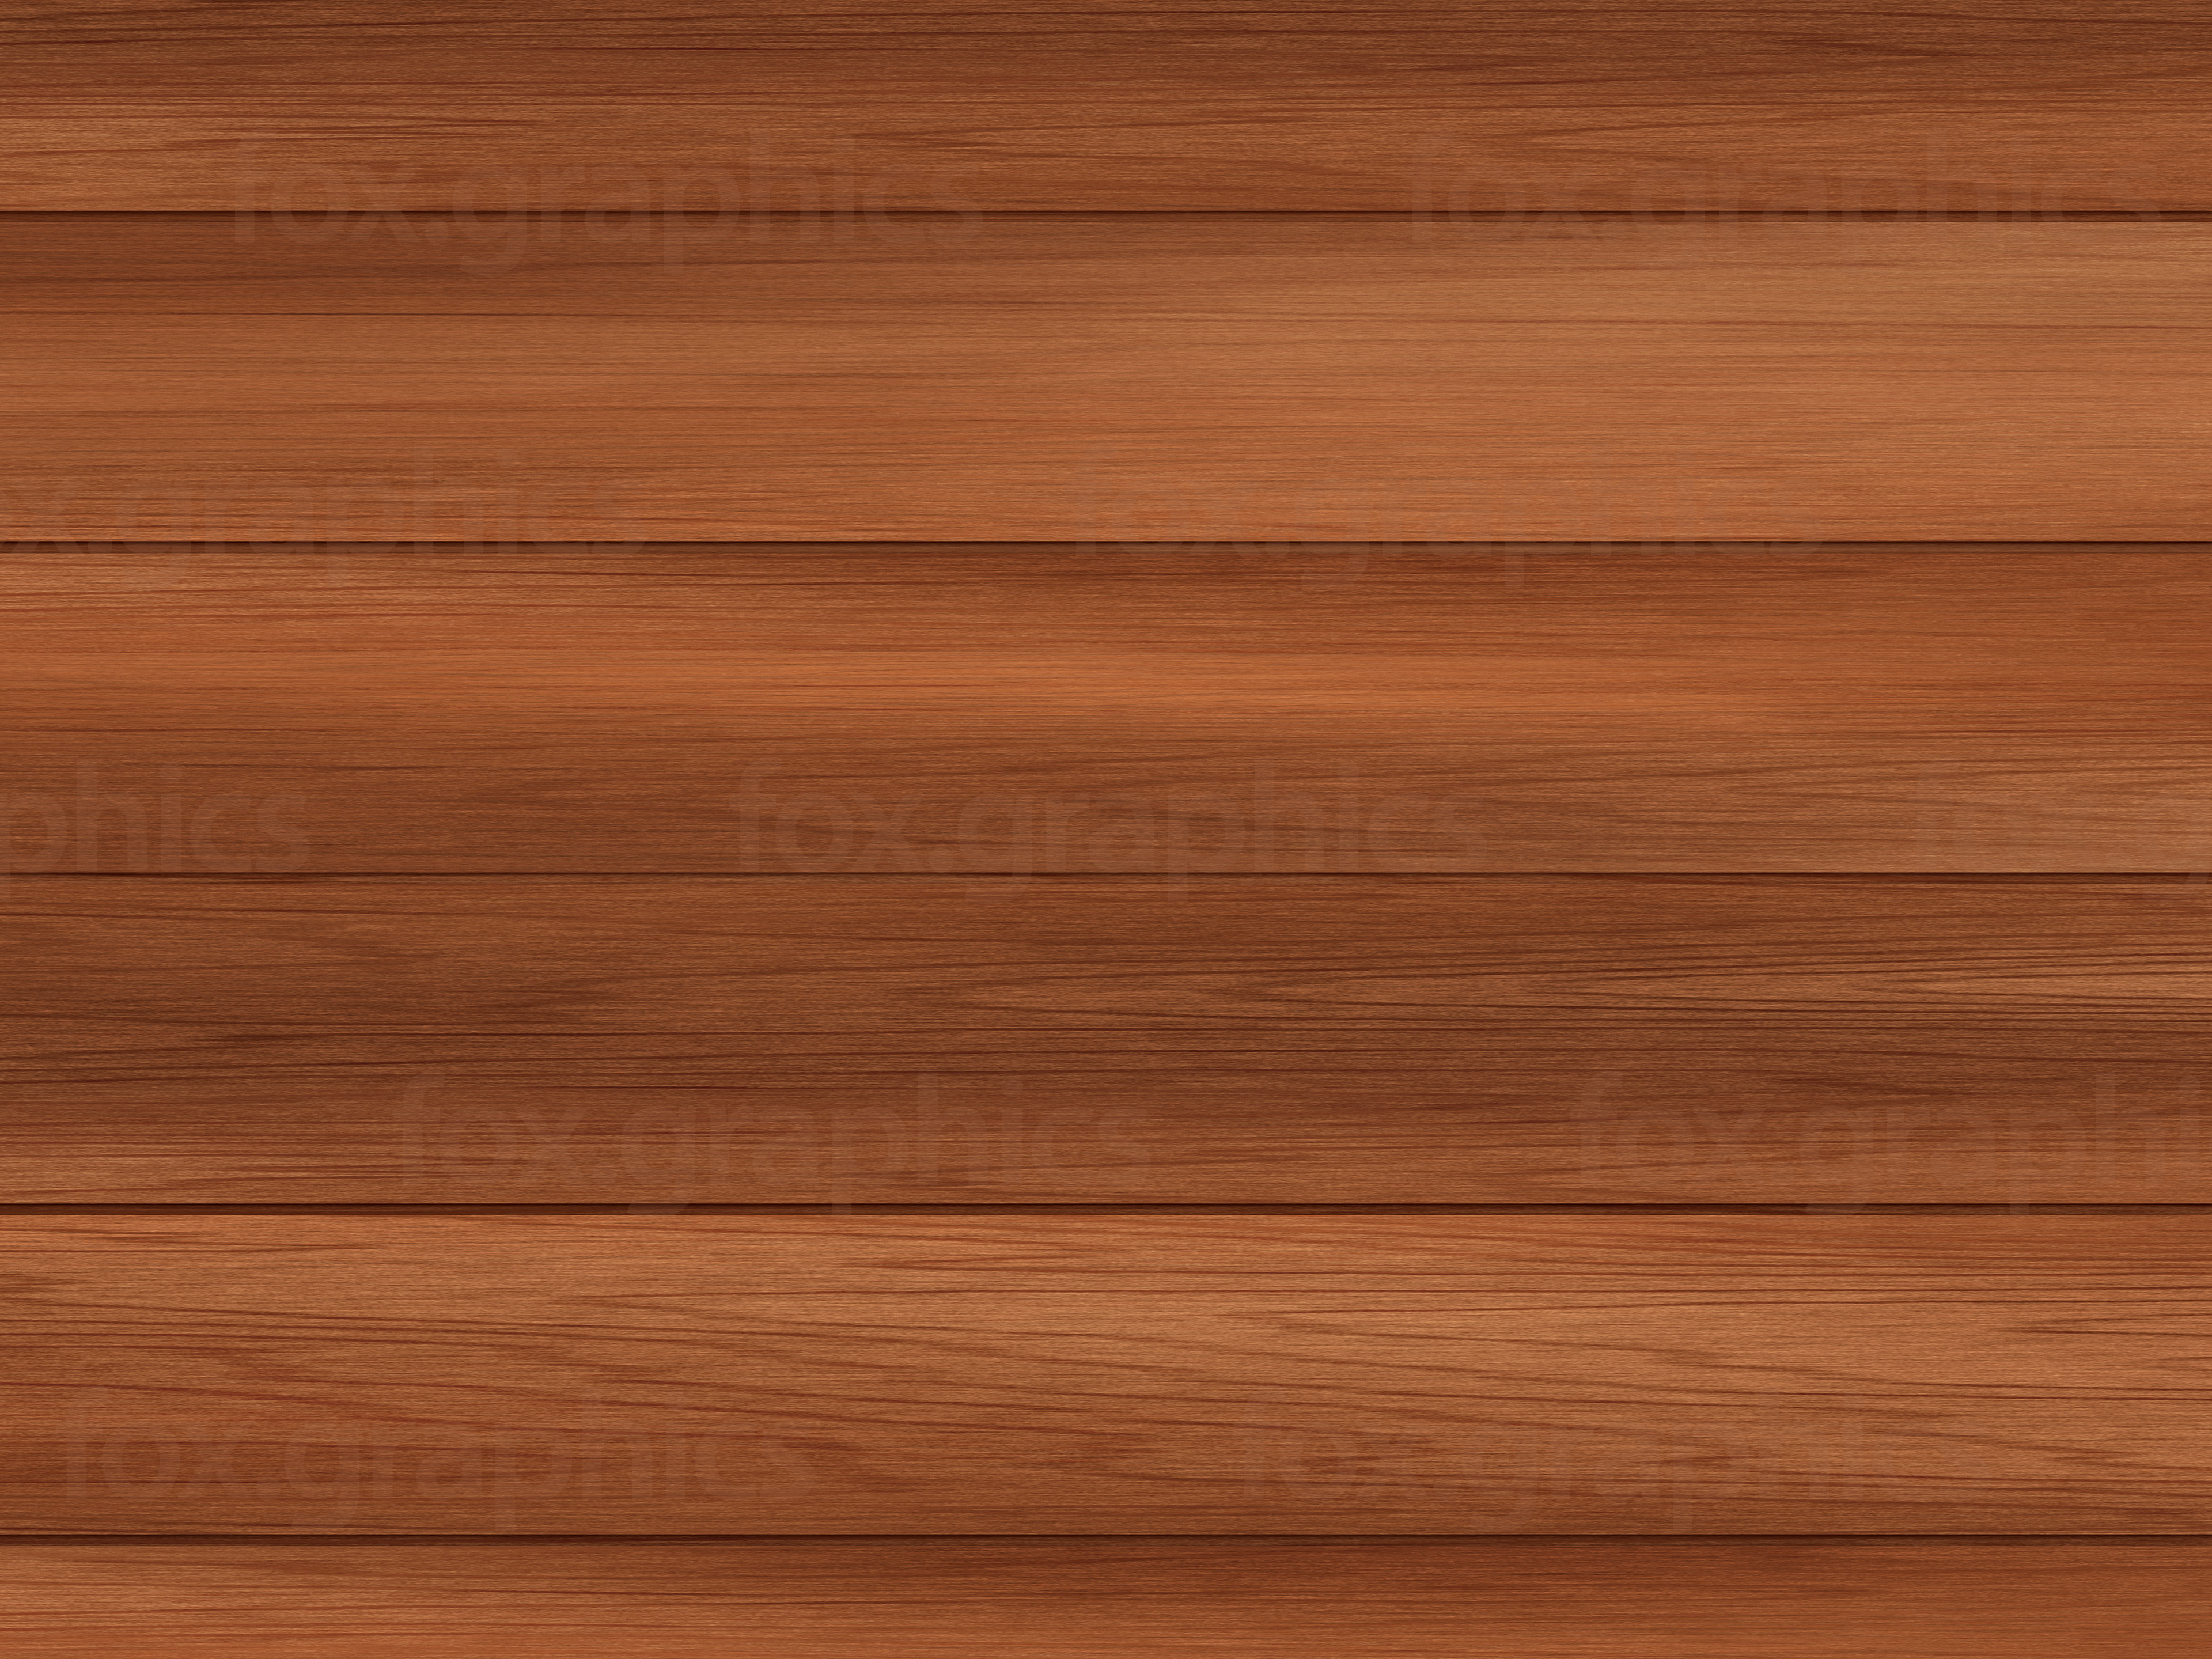 Wooden floor background - Fox Graphics